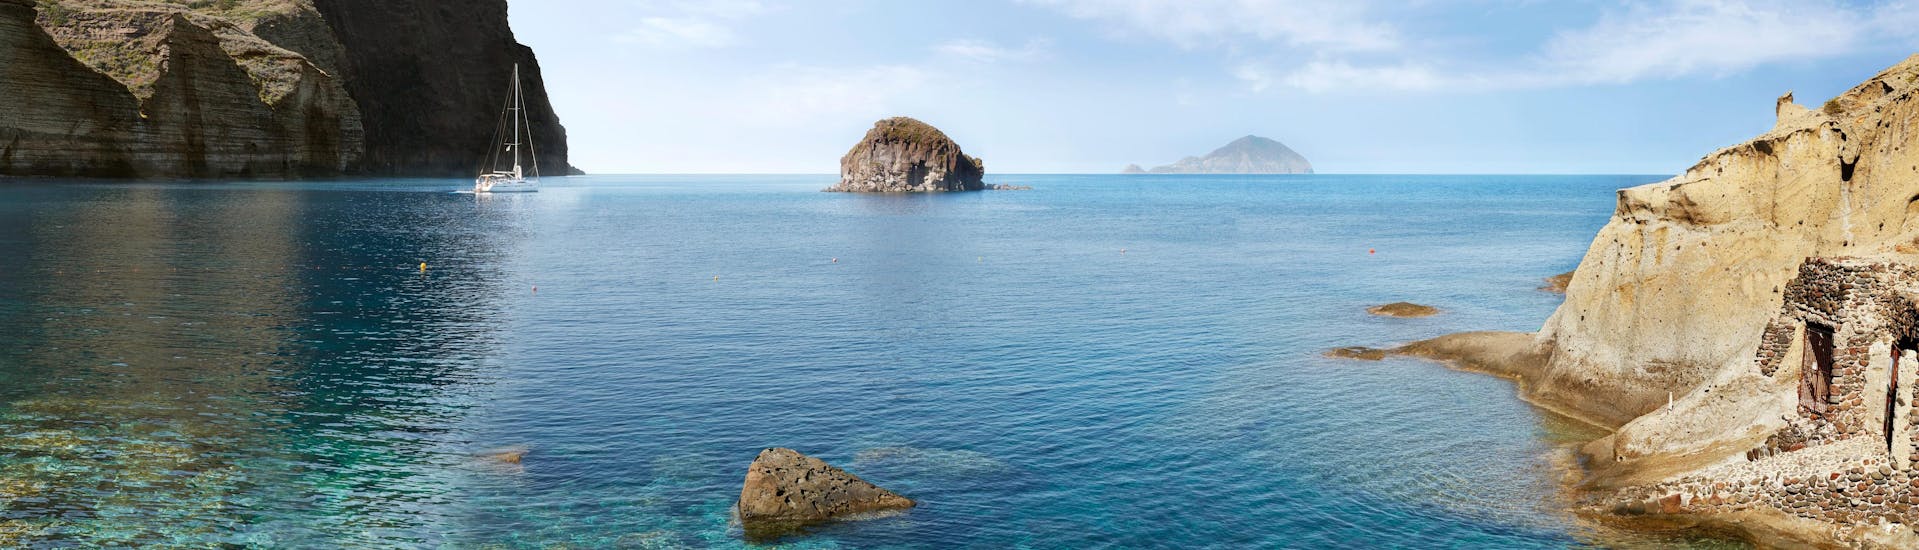 Vista de la hermosa playa de Pollara, que se puede visitar durante un paseo en barco a la isla Salina.